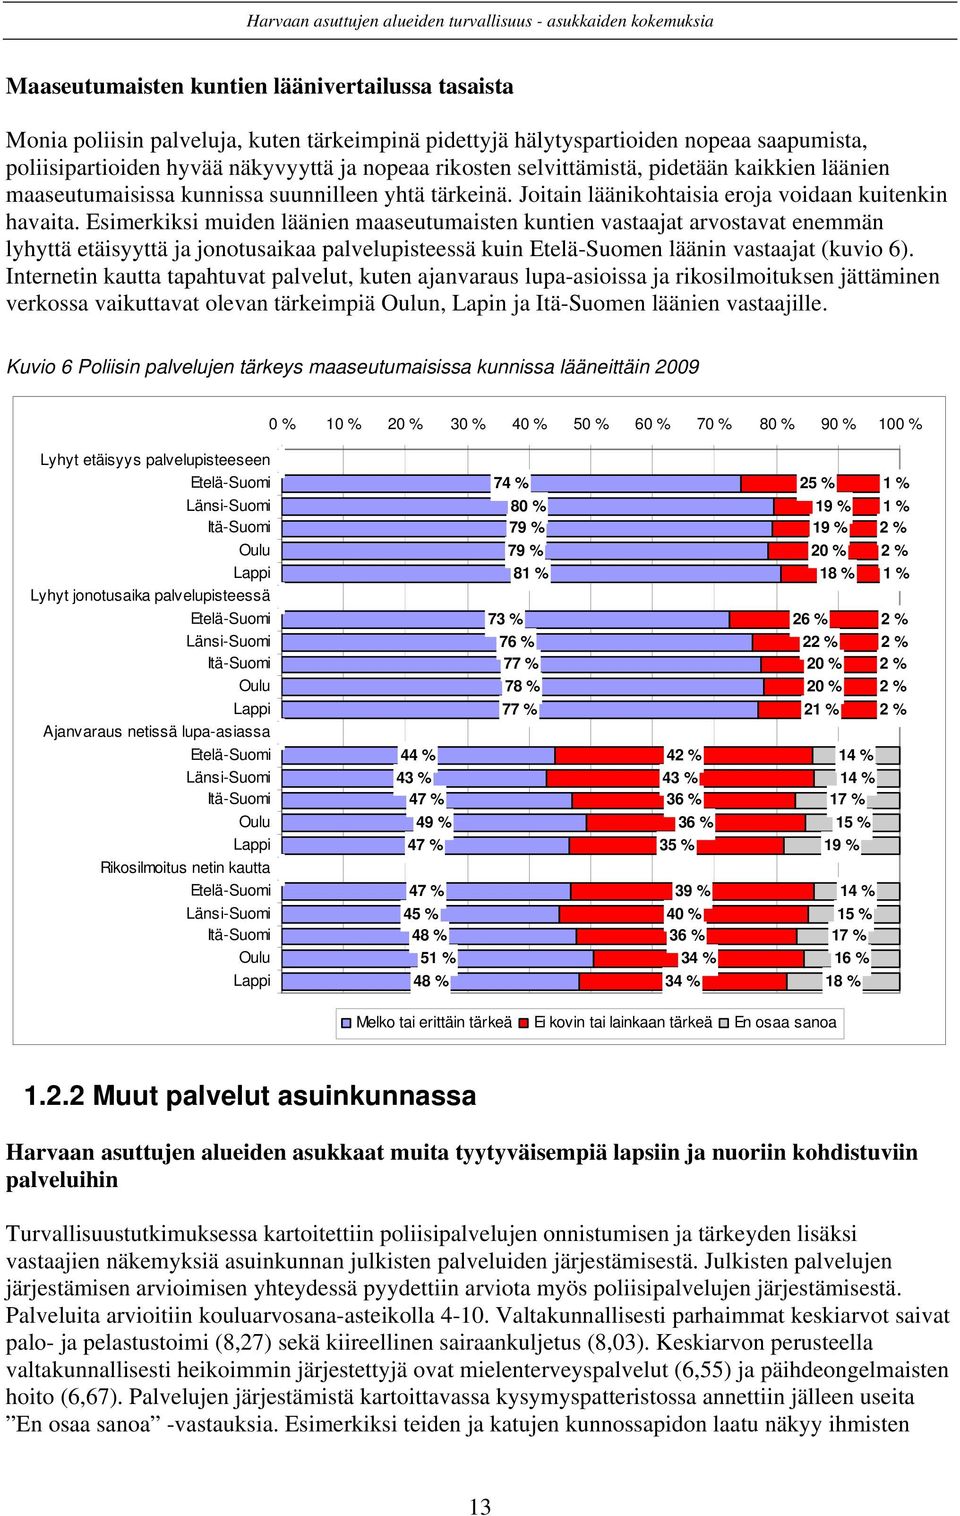 Esimerkiksi muiden läänien maaseutumaisten kuntien vastaajat arvostavat enemmän lyhyttä etäisyyttä ja jonotusaikaa palvelupisteessä kuin Etelä-Suomen läänin vastaajat (kuvio 6).